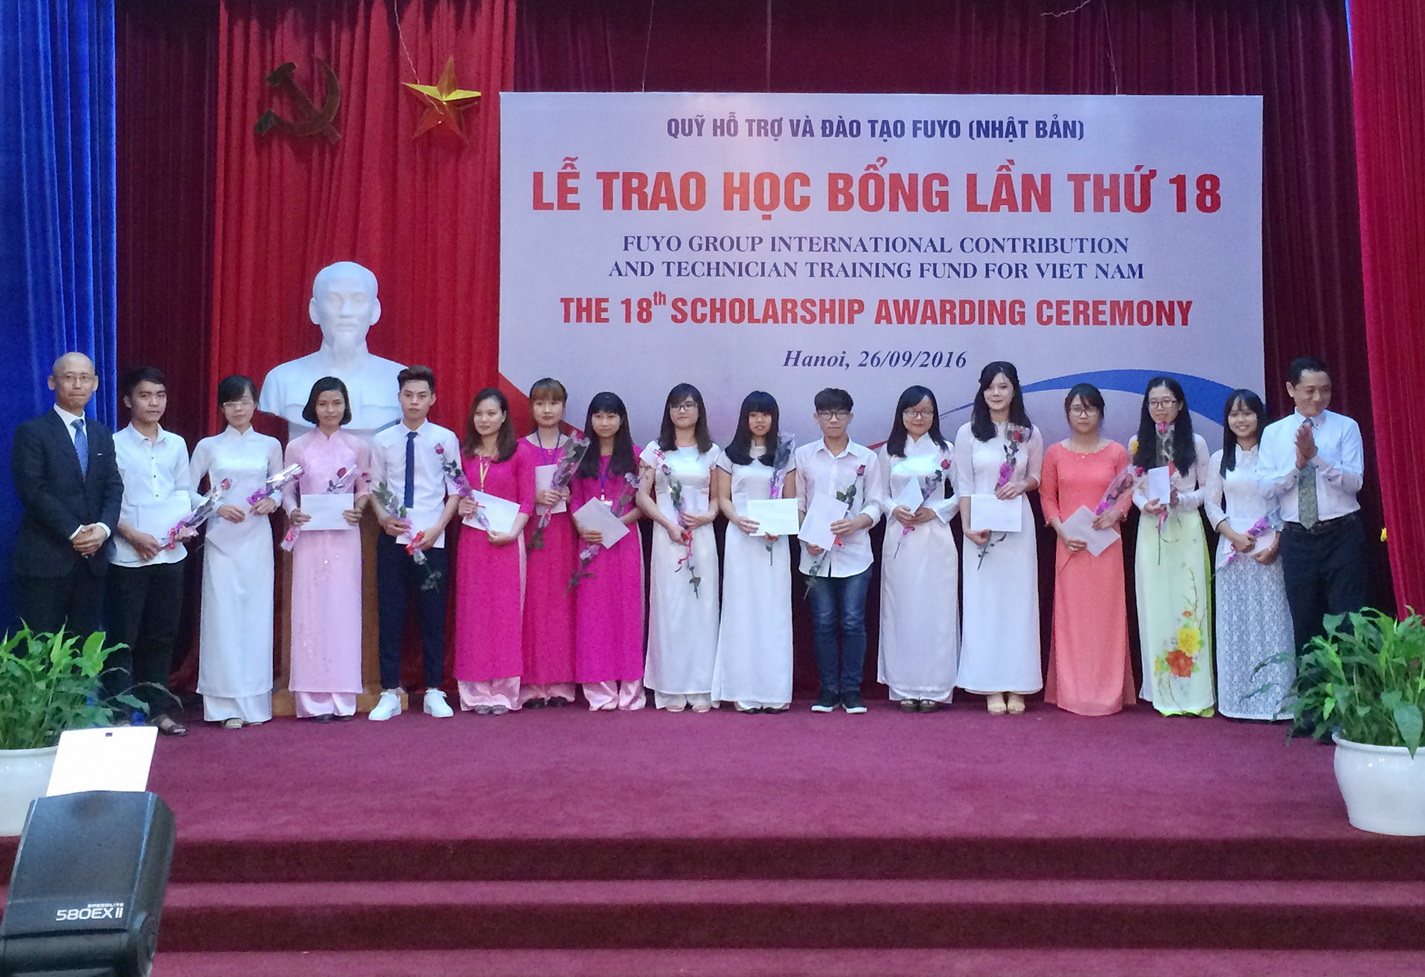 Ông Nguyễn Xuân Tiến, Phó Vụ trưởng Vụ kinh tế đối ngoại và đại diện Quỹ FUYO trao học bổng cho các sinh viên xuất sắc